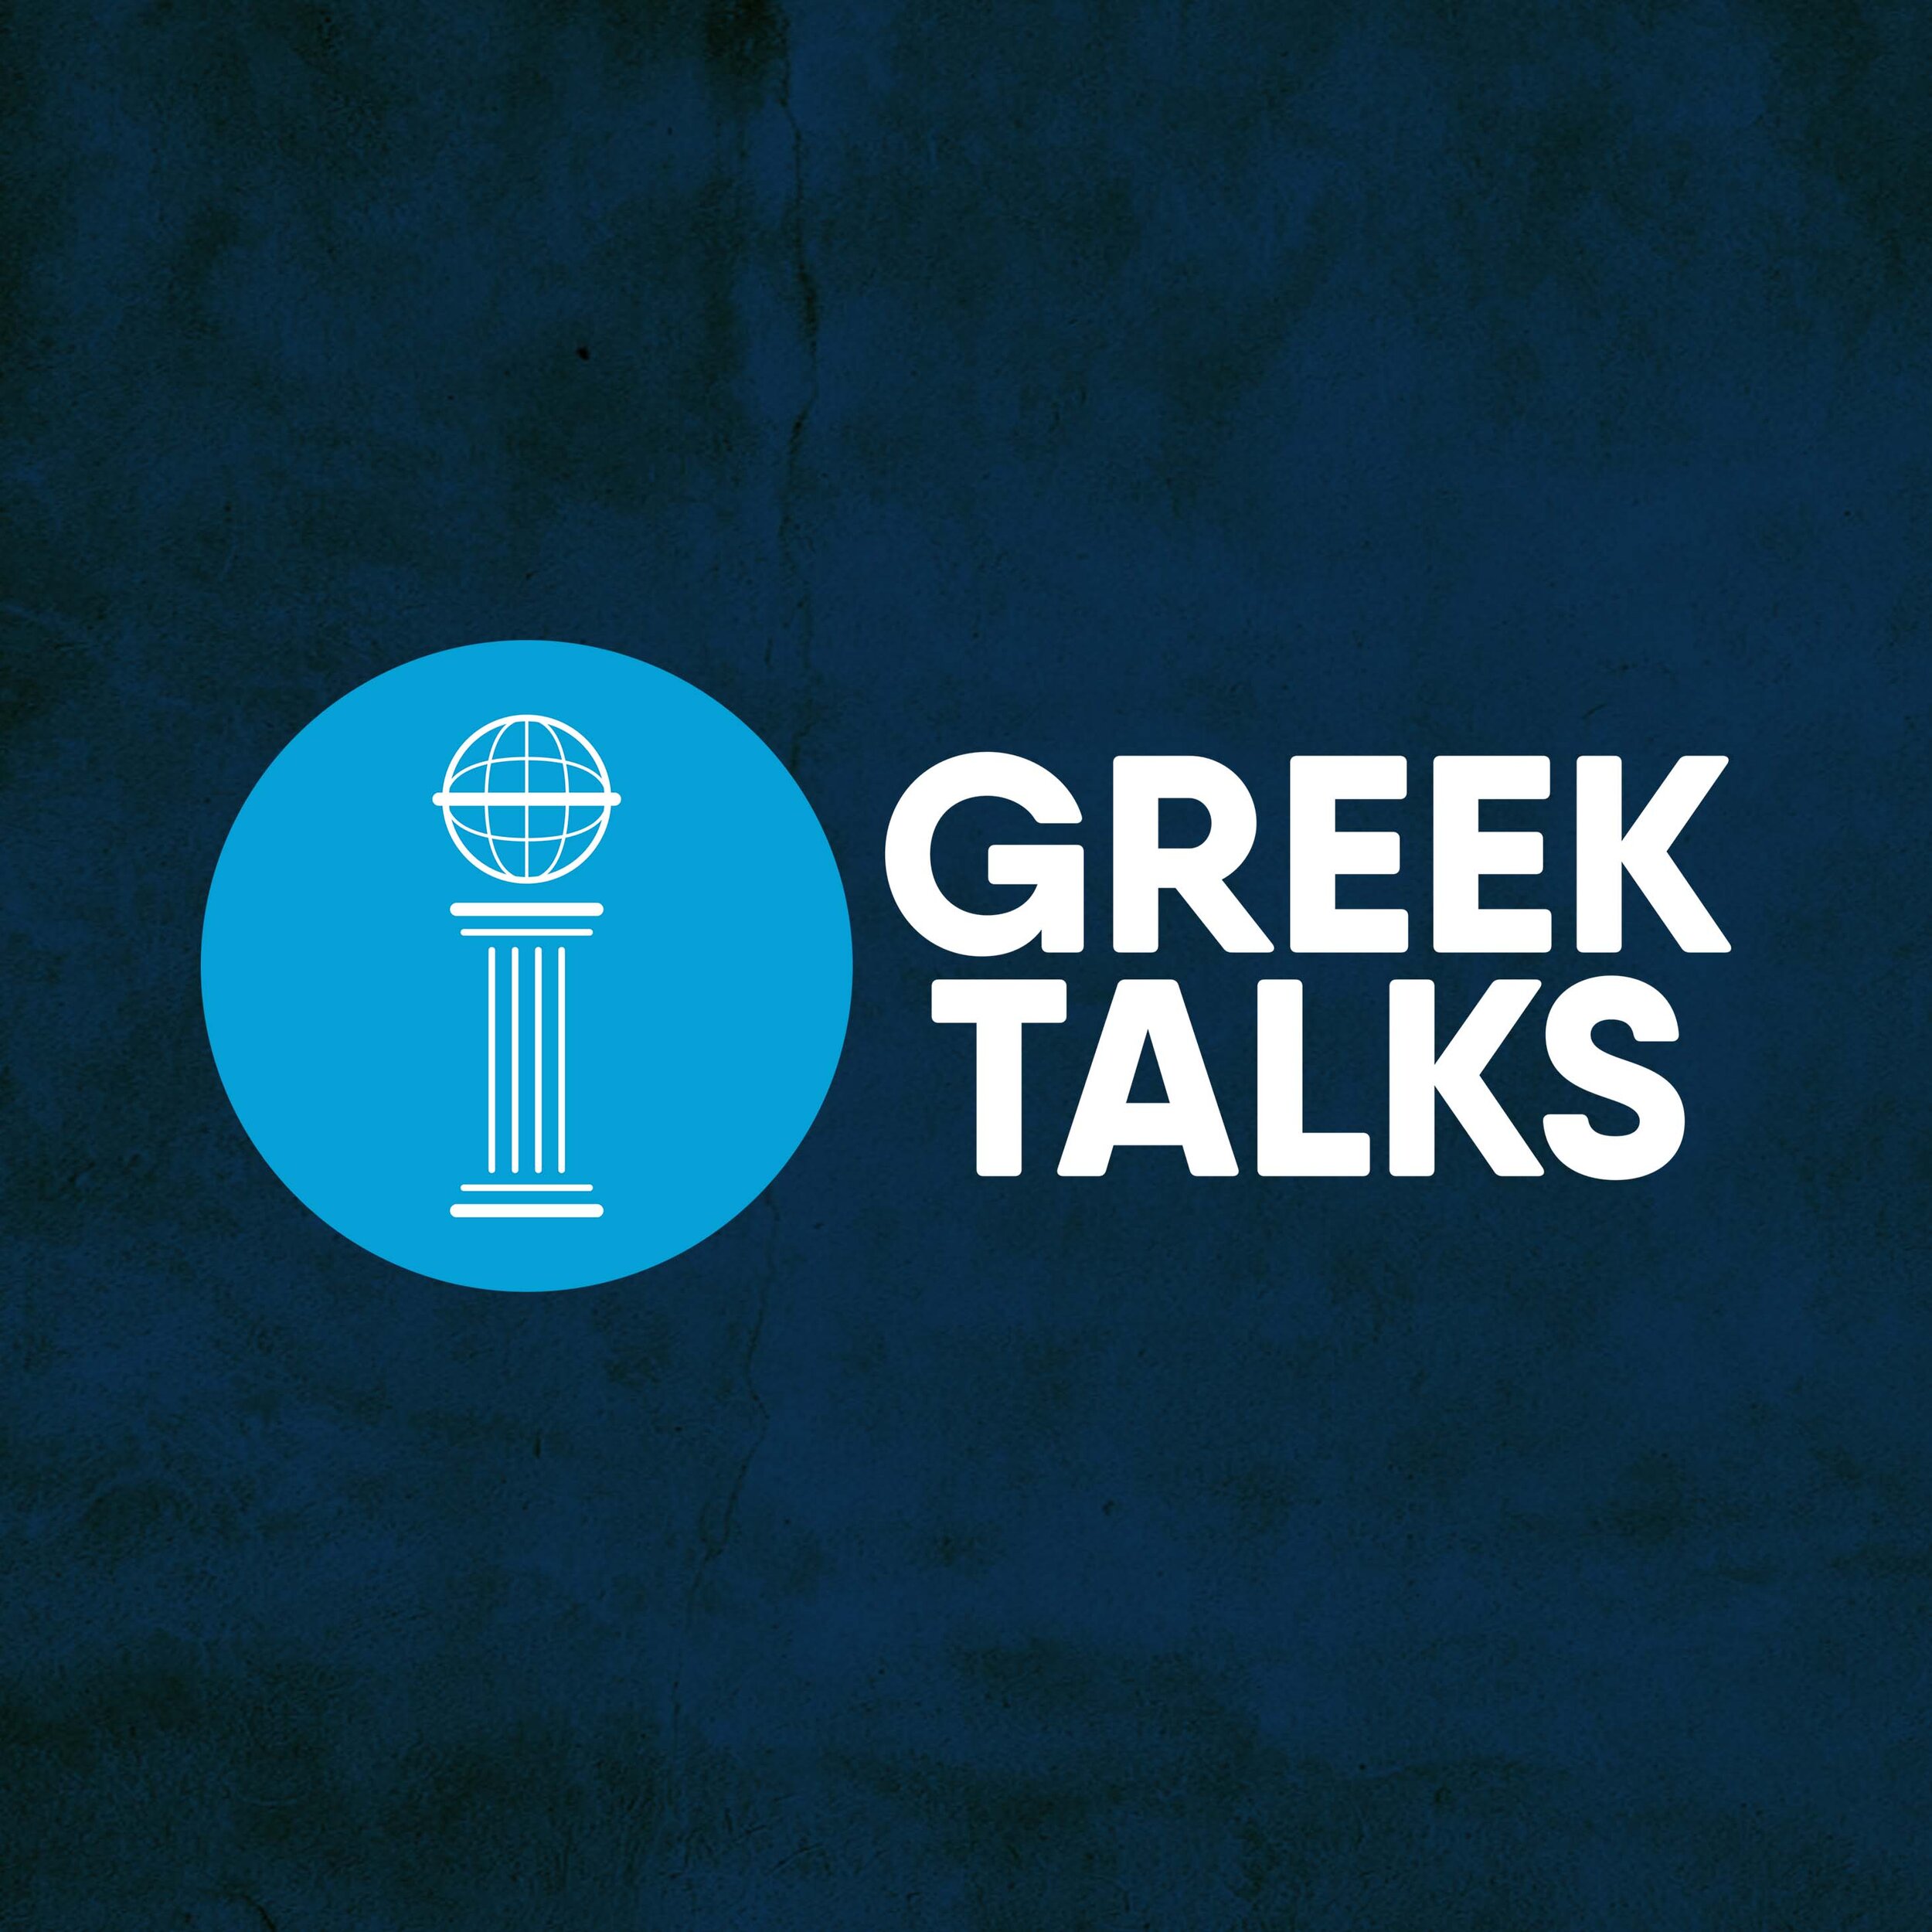 Greek-Talks-thumb-.jpg